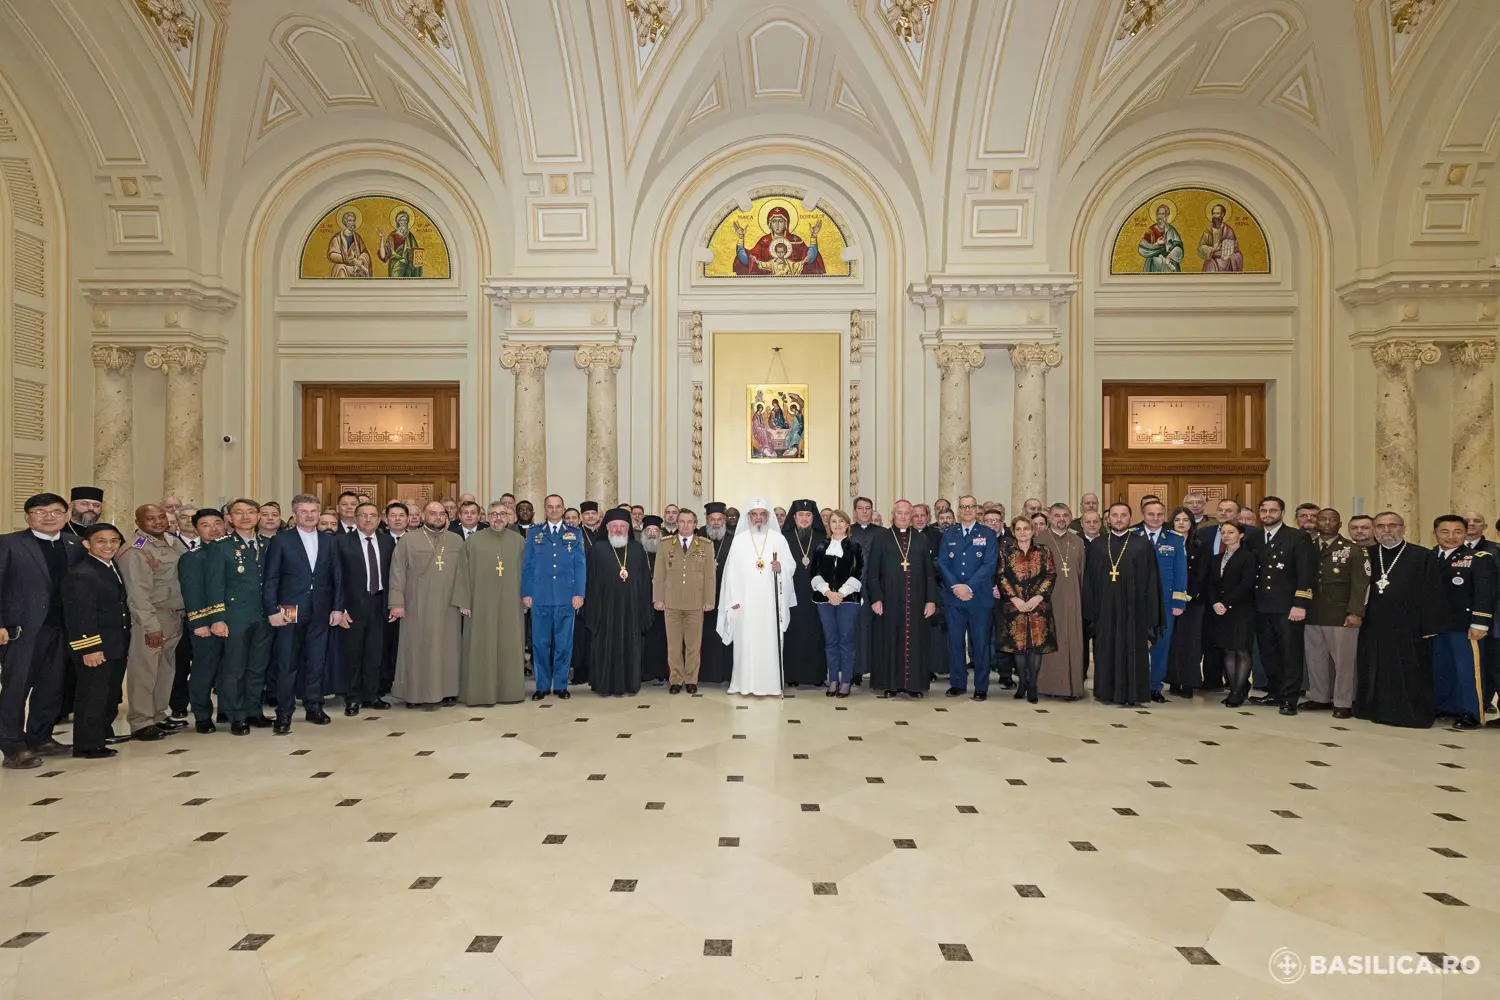 Roumanie : le palais patriarcal a accueilli la conférence militaire internationale de l’otan des aumôniers en chef du partenariat pour la paix